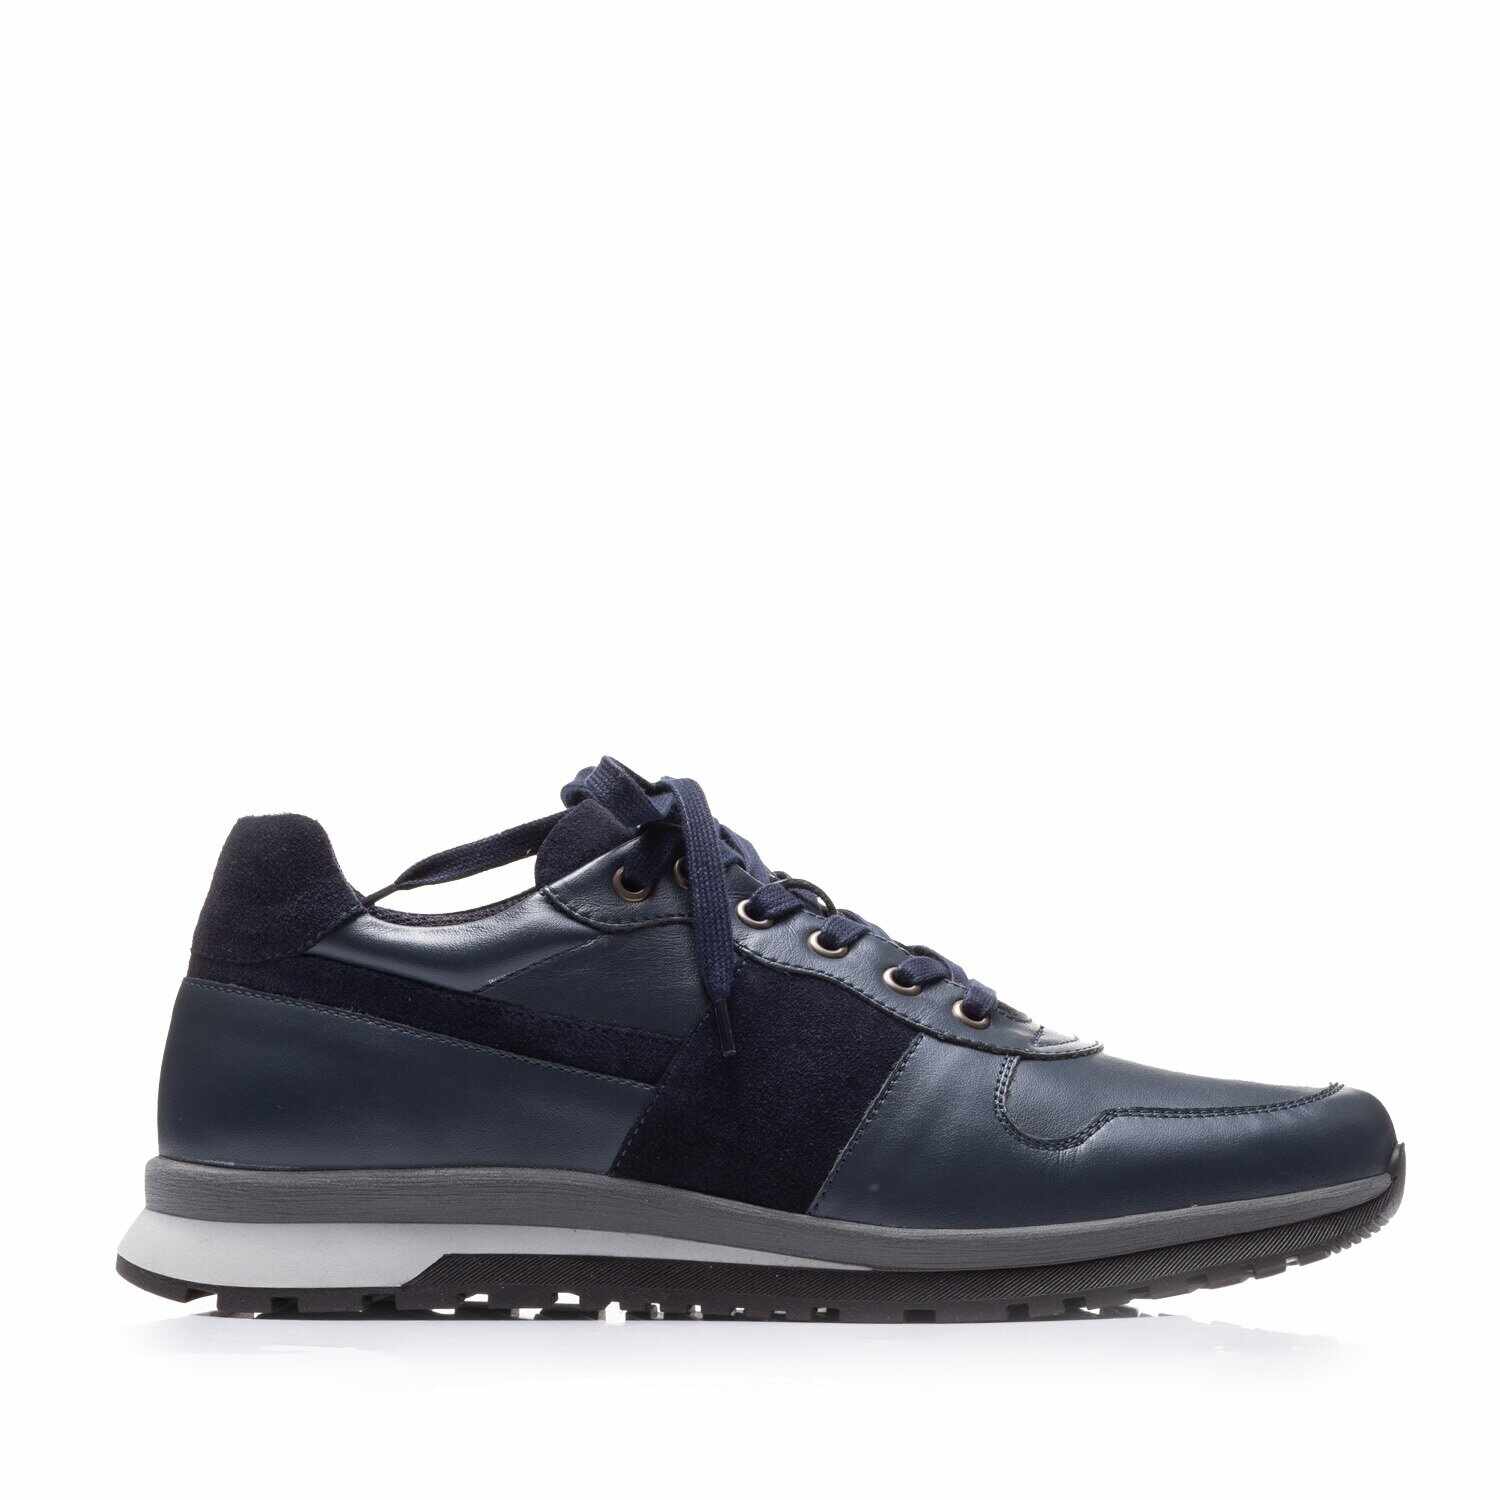 Pantofi sport bărbați din piele naturală, Leofex - Mostră 519-1 Blue Box Velur